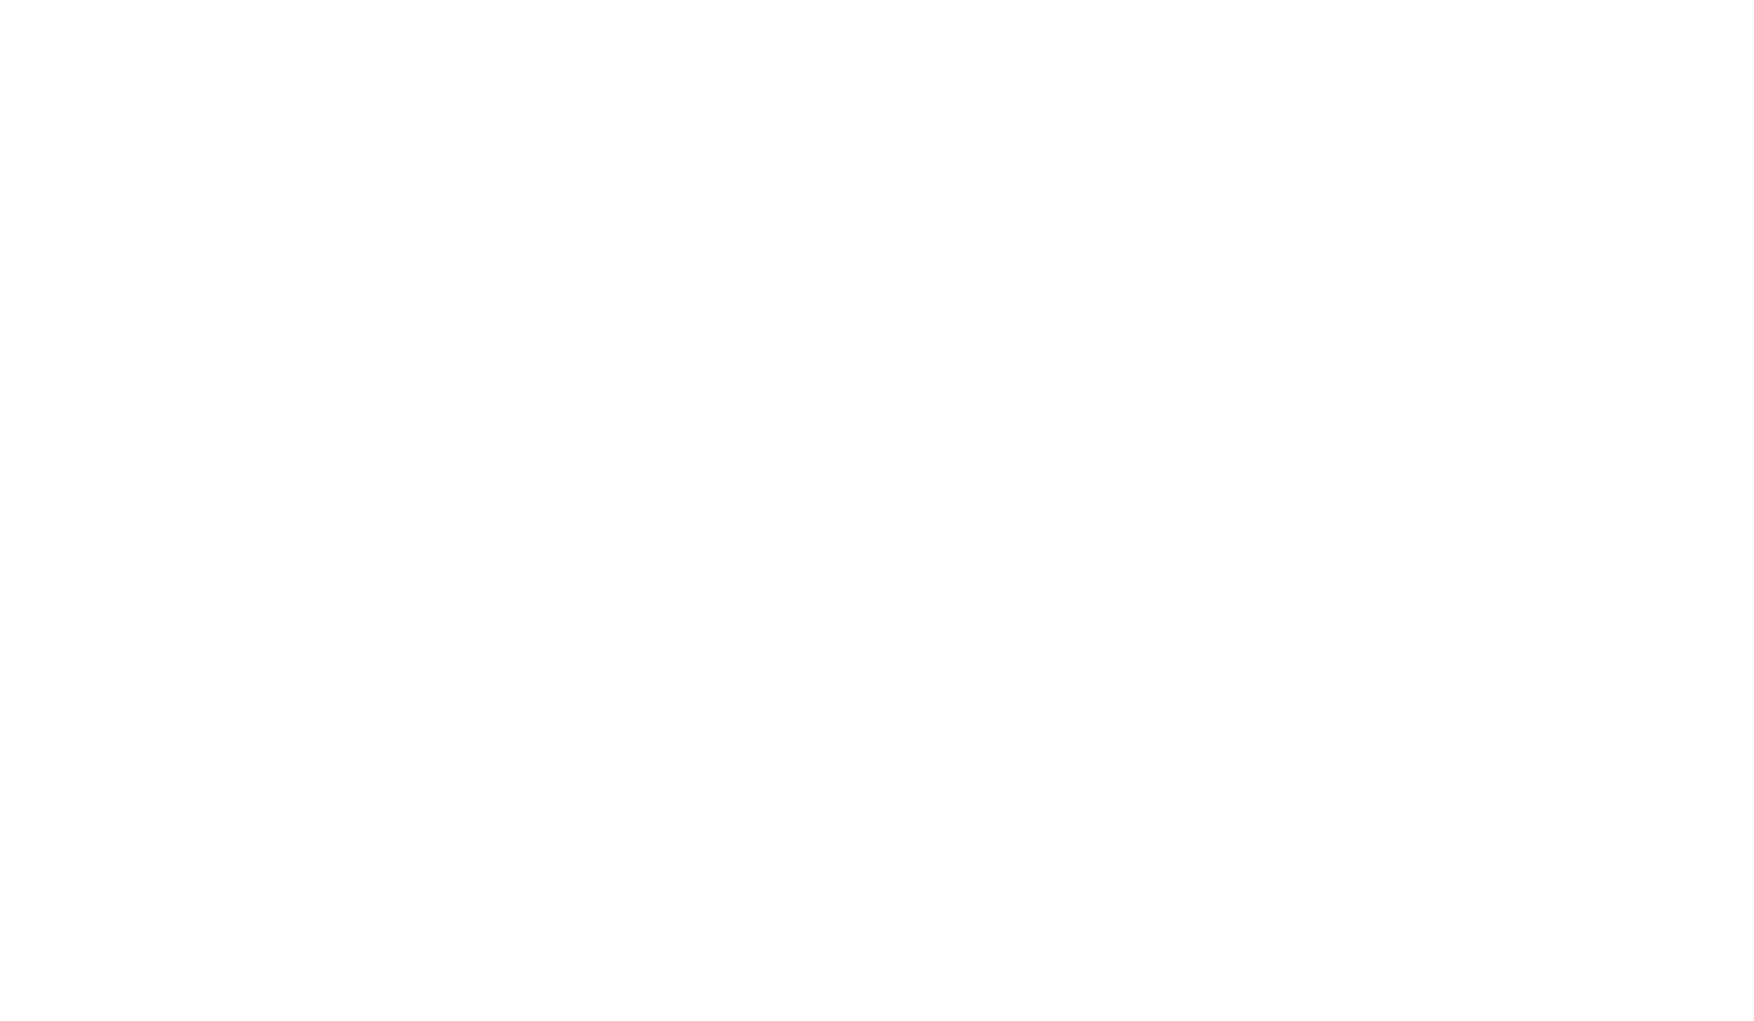 BLACK CHALLENGE Crossfit Licensed Event.